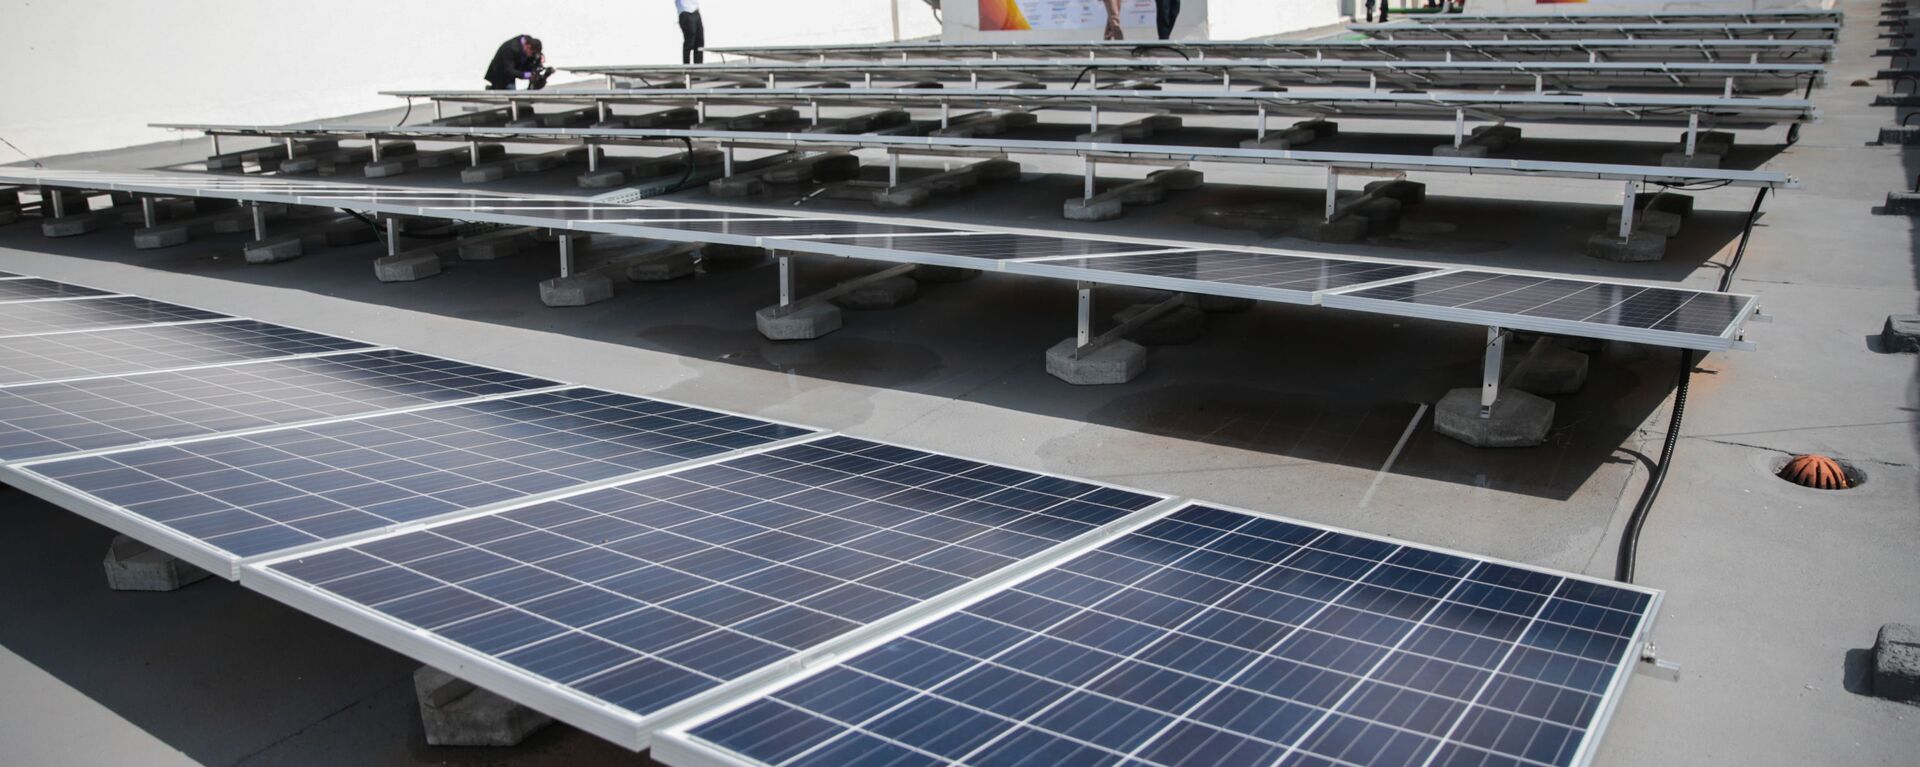 Painéis solares instalados na cobertura de um prédio Ministério de Minas e Energia em Brasília em 2016 - Sputnik Brasil, 1920, 09.07.2021